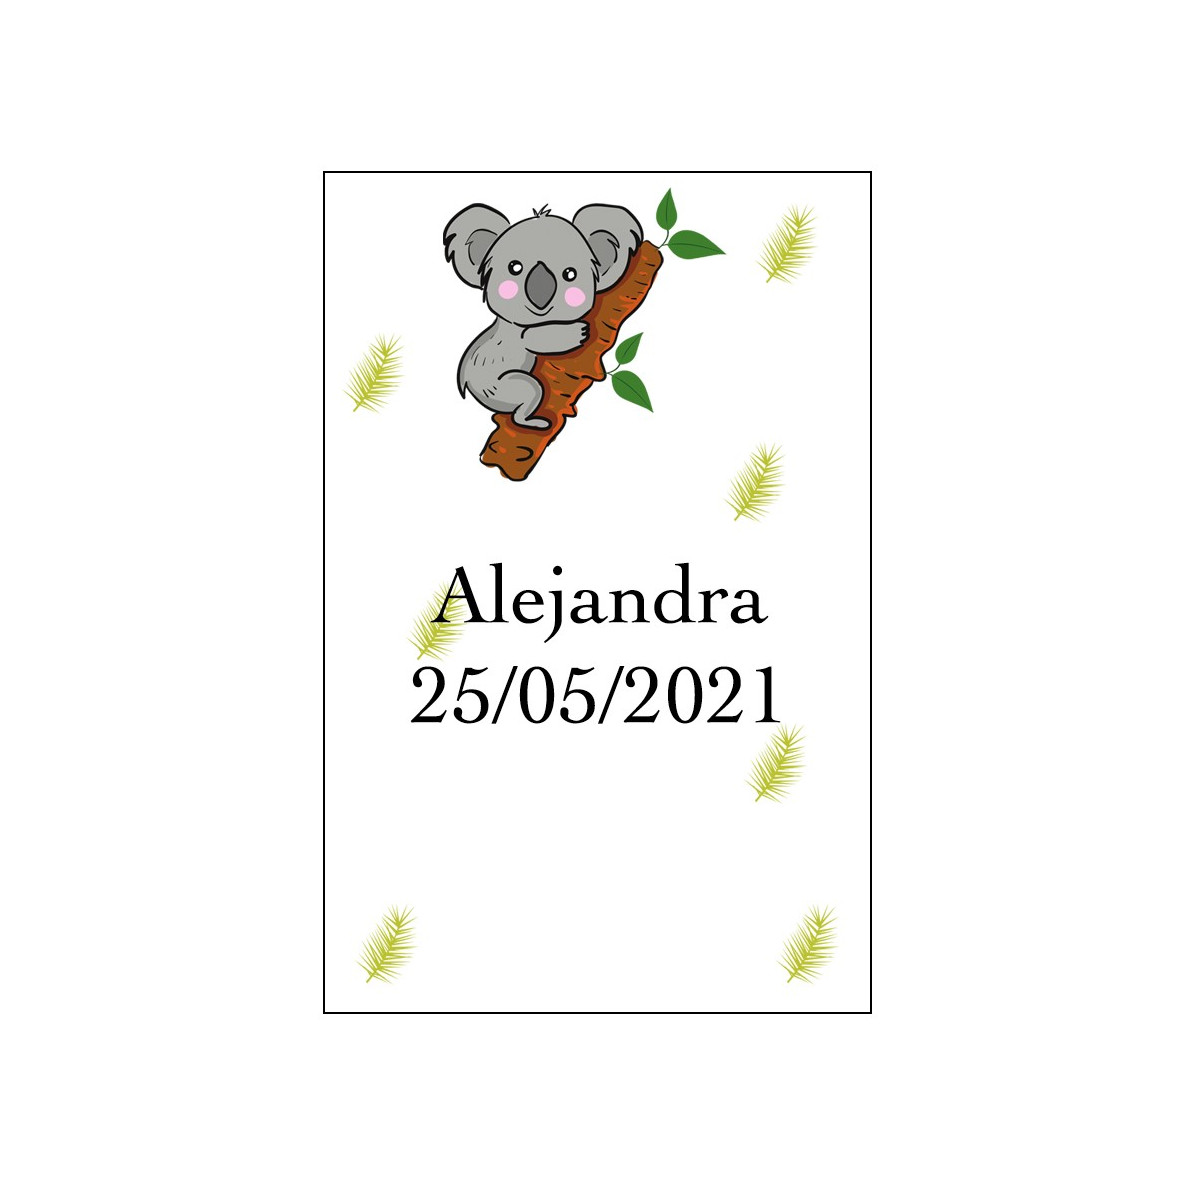 Adesivo de coala personalizado com nome e data